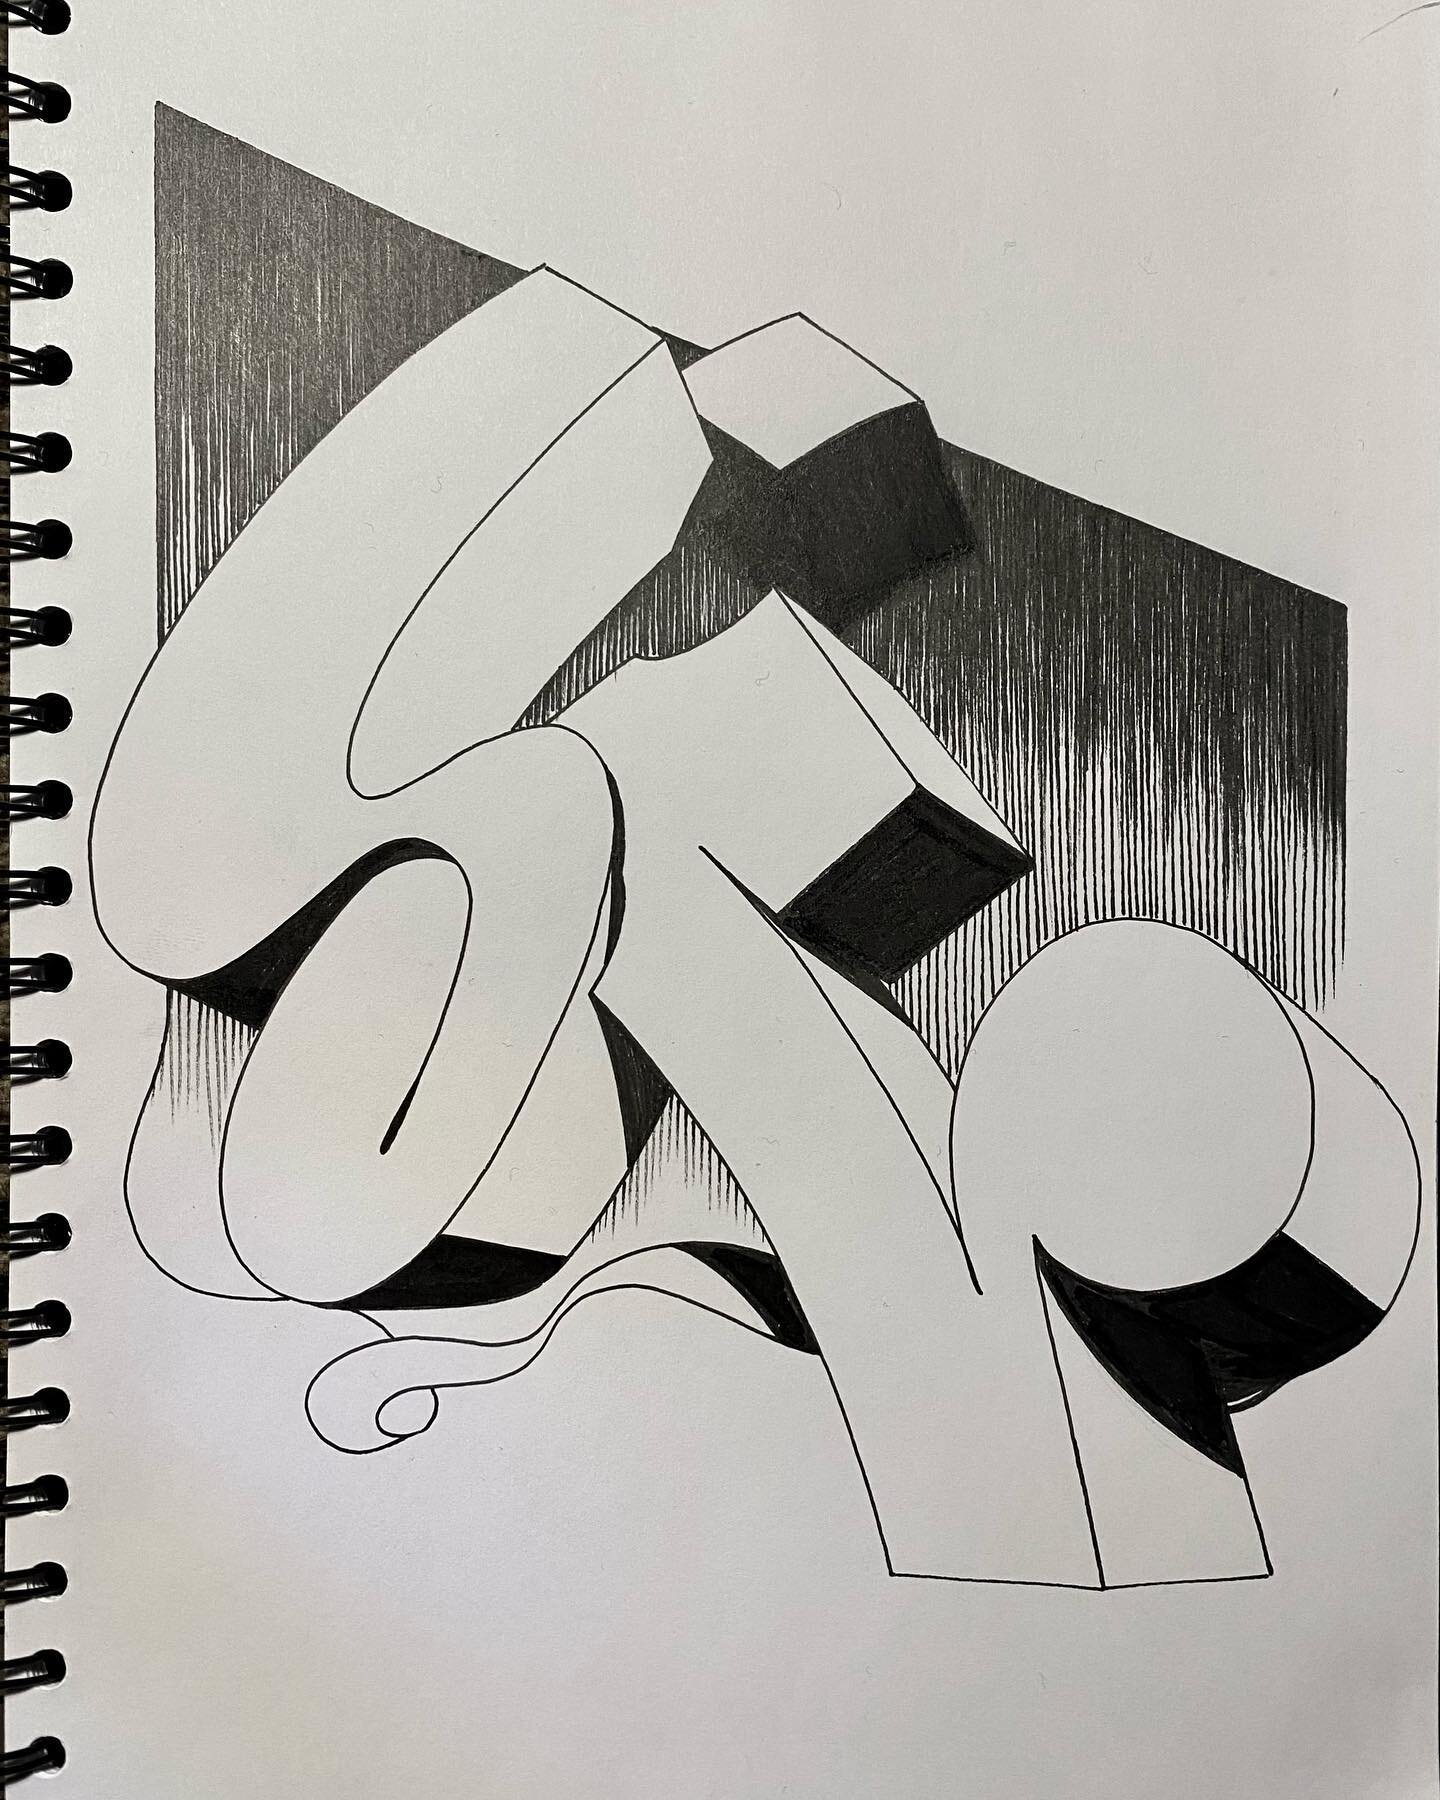 Signature W...
.
.
.
#abstractart #letter #illustration #felttip #simonrachwan #art #2022 #norway #black #white #analog #a4 #letterart #handmade